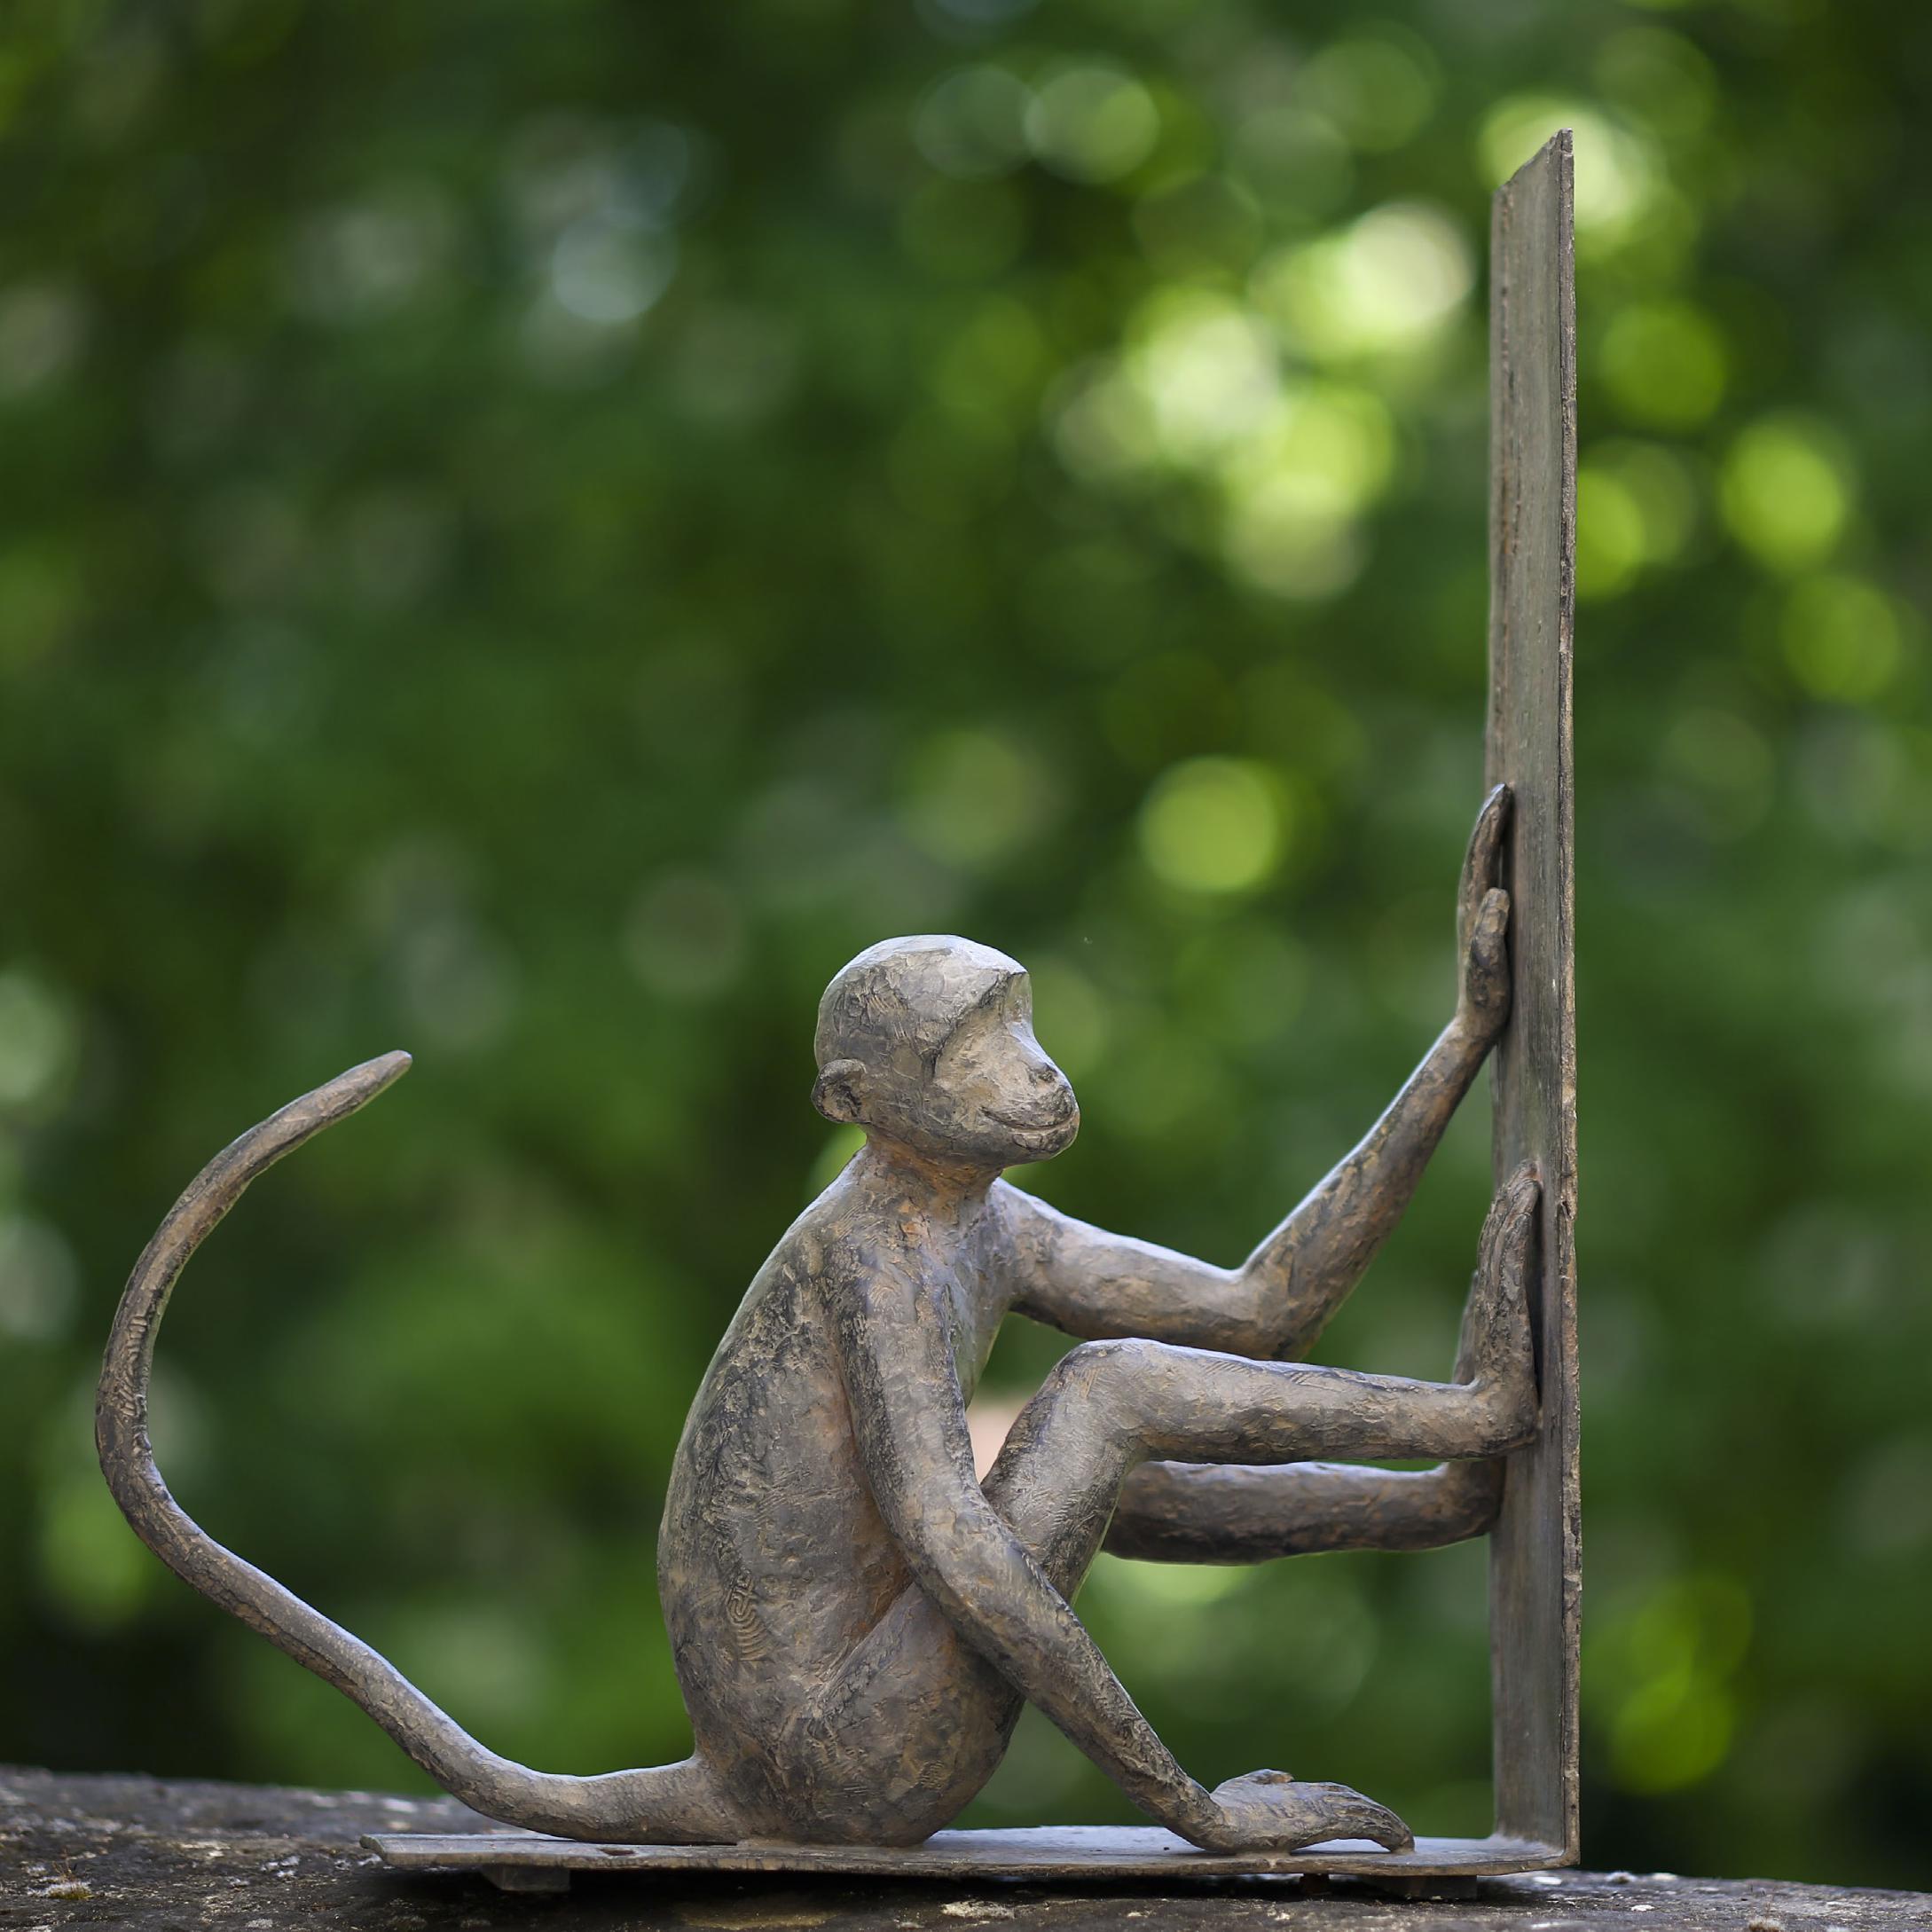 Baboune ist eine Bronzeskulptur der zeitgenössischen Künstlerin Marine de Soos mit den Maßen 41 × 34 × 13,5 cm (16,1 × 13,4 × 5,3 in). Die Skulptur ist signiert und nummeriert, gehört zu einer limitierten Auflage von 8 Exemplaren + 4 Künstlerabzügen